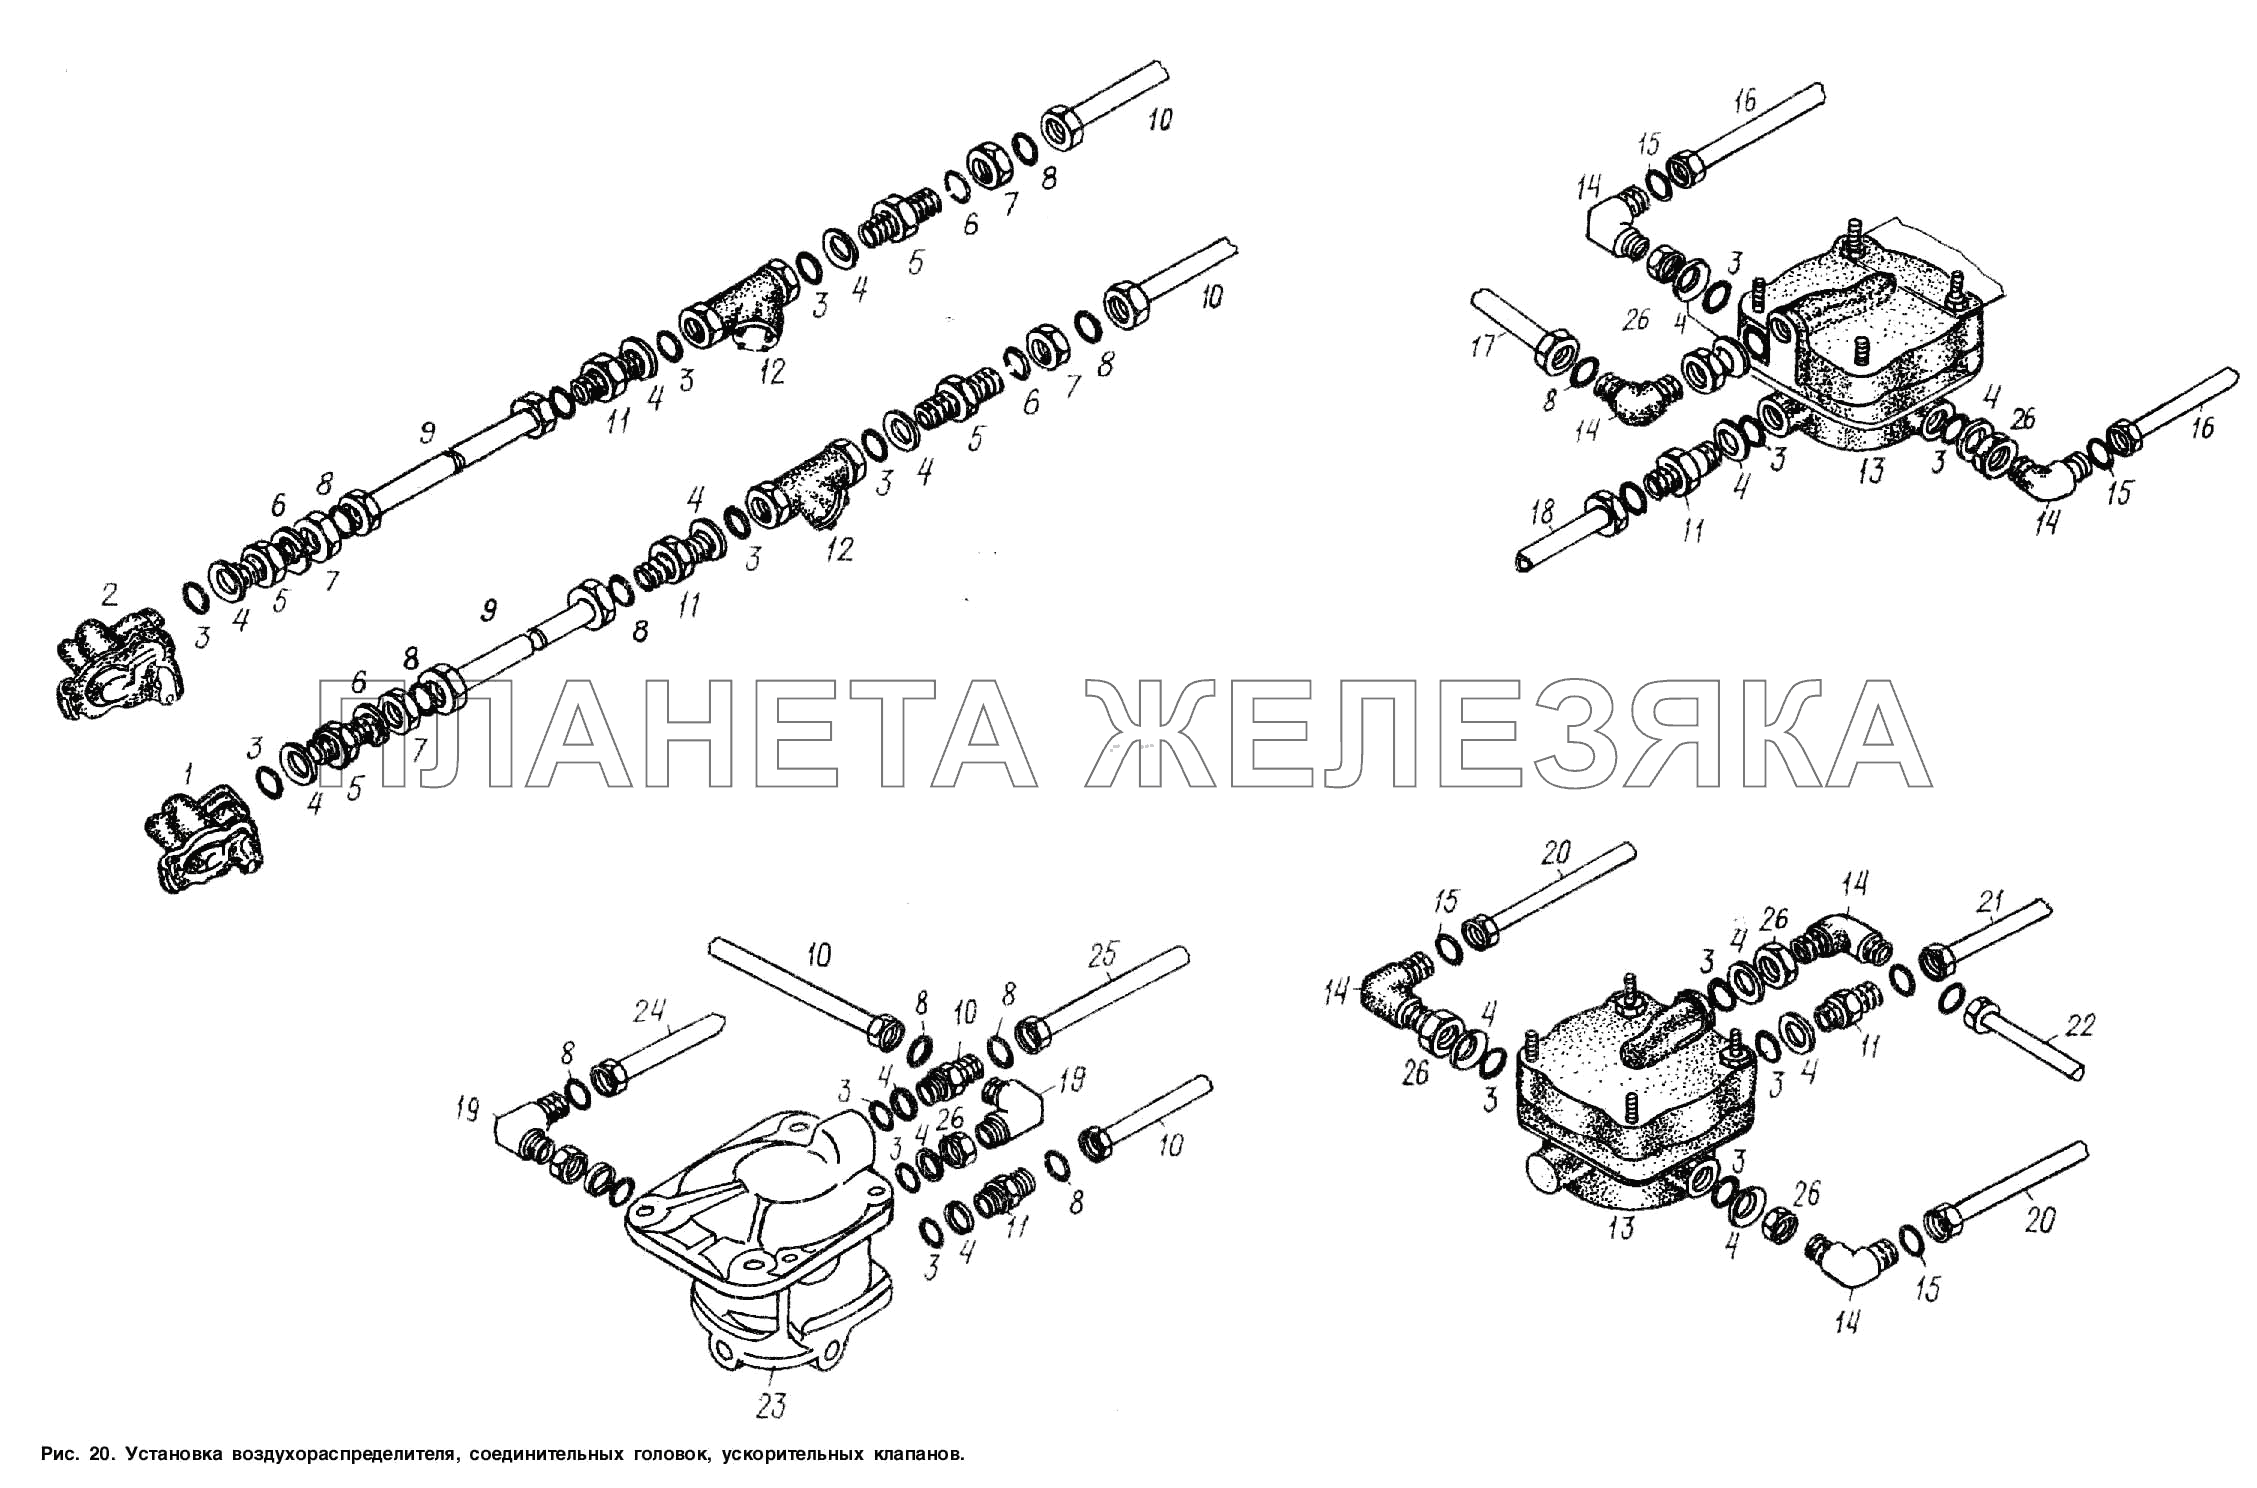 Установка воздухораспределителя, соединительных головок, ускорительных клапанов МАЗ-93802